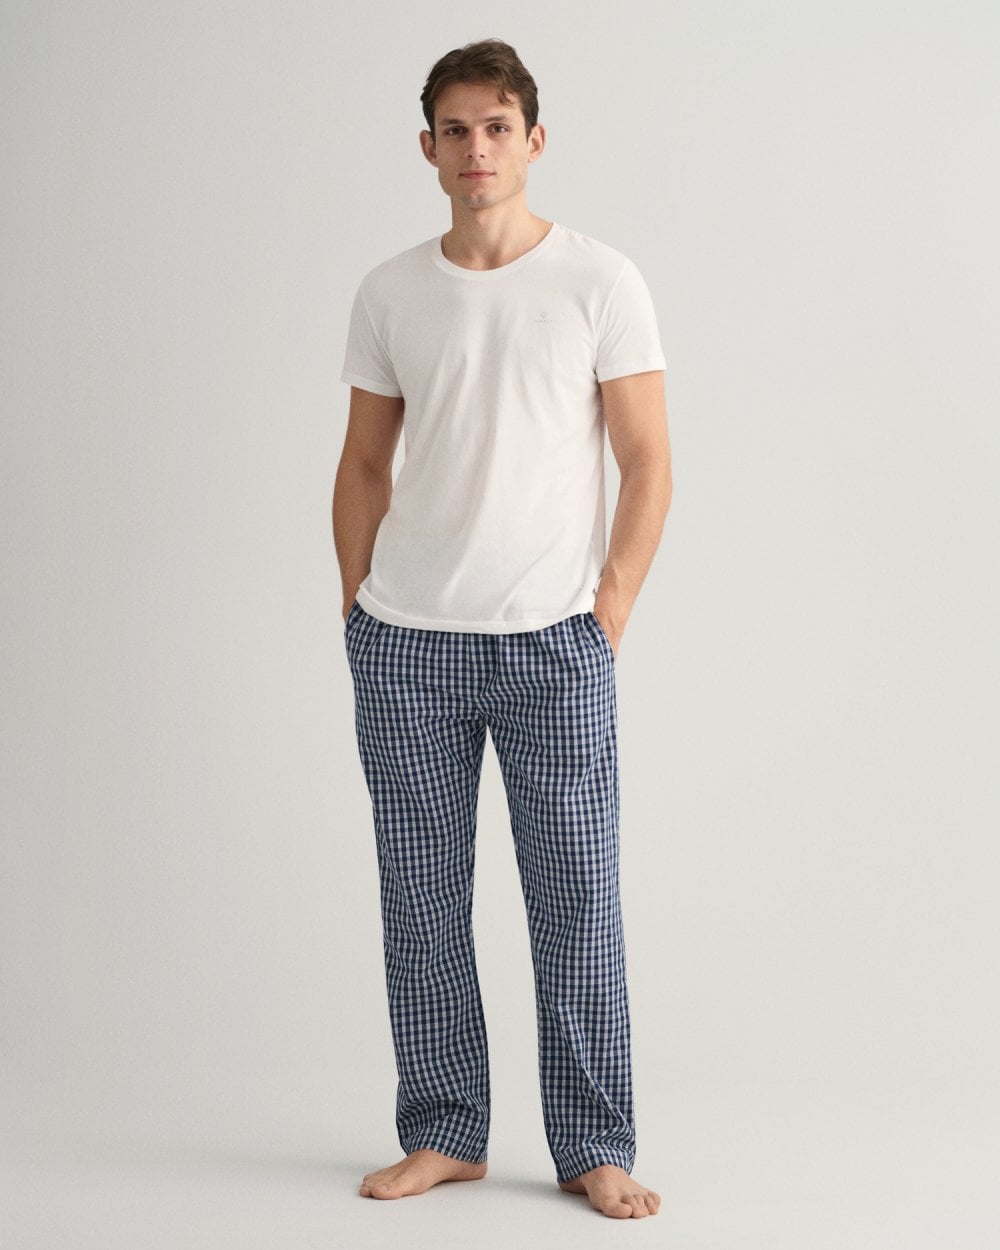 Micro Check Pajama Pants